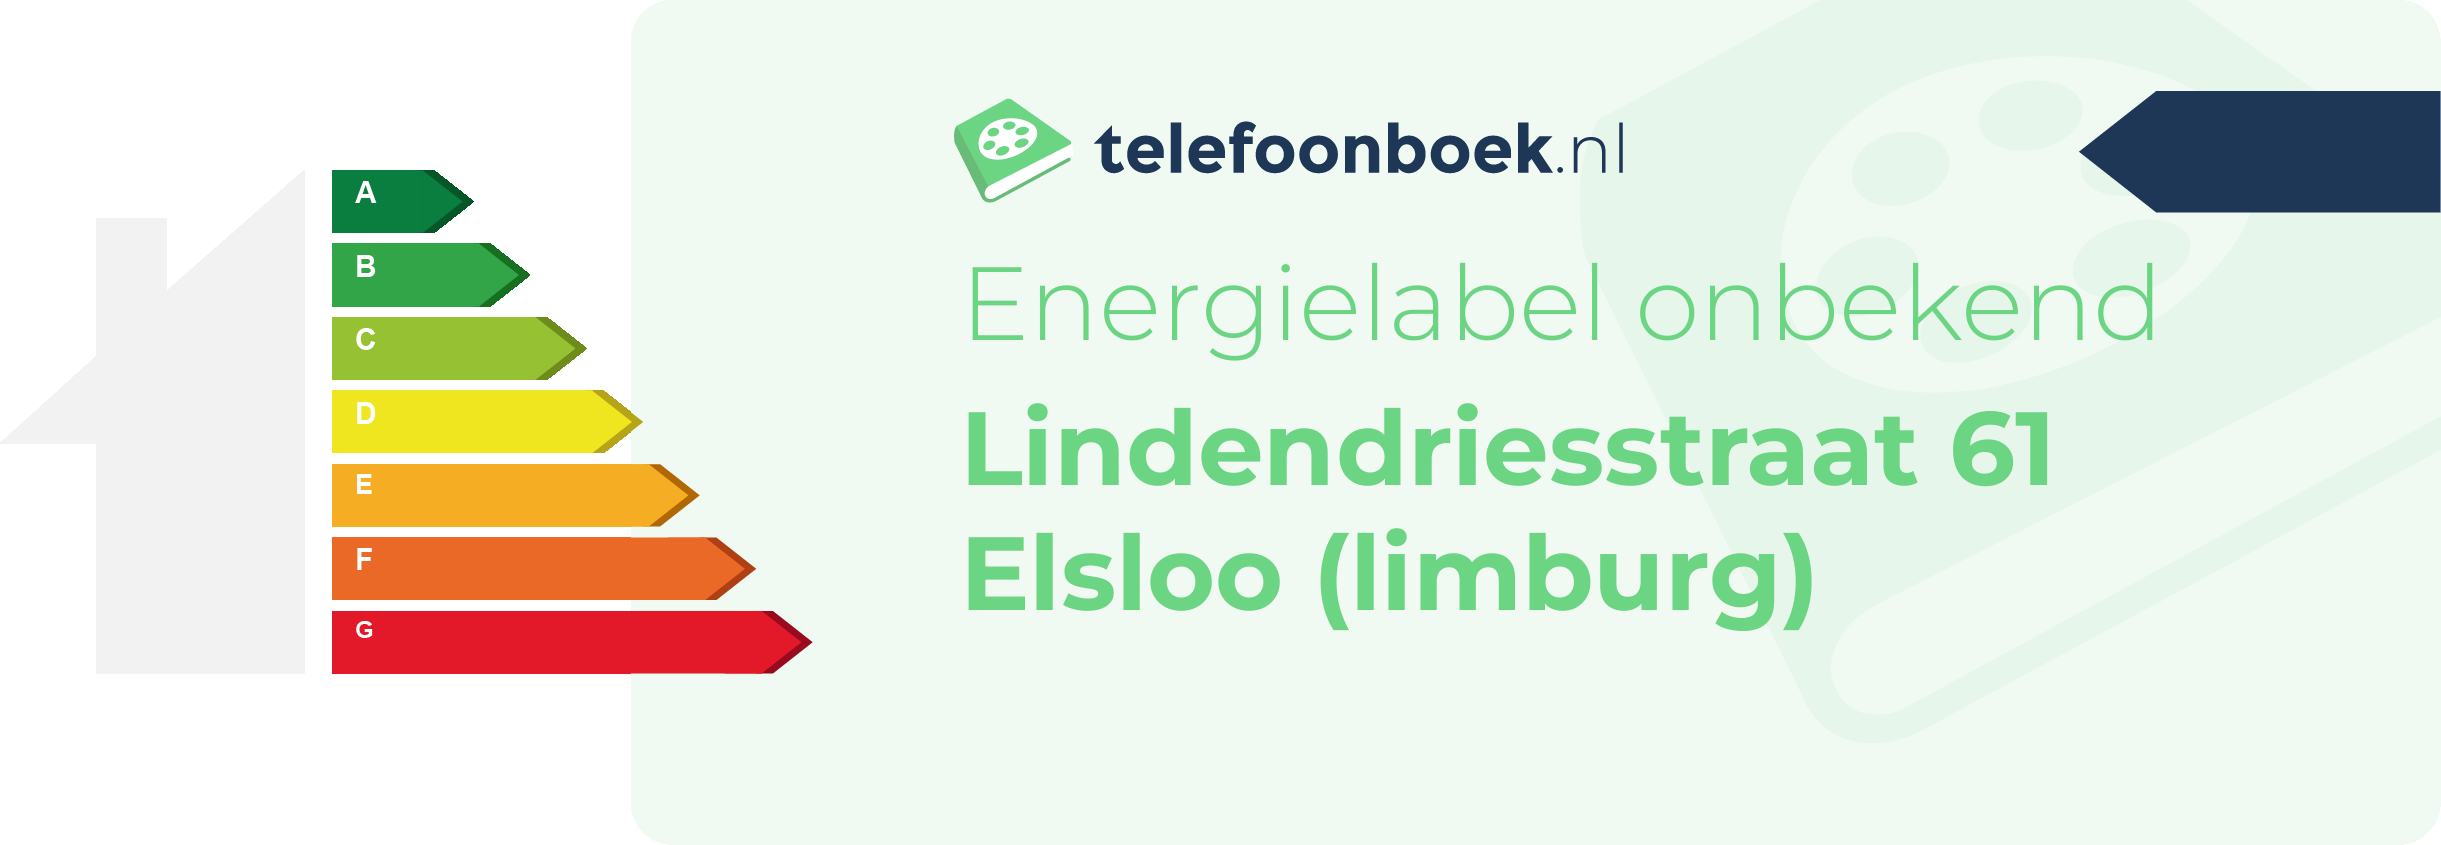 Energielabel Lindendriesstraat 61 Elsloo (Limburg)